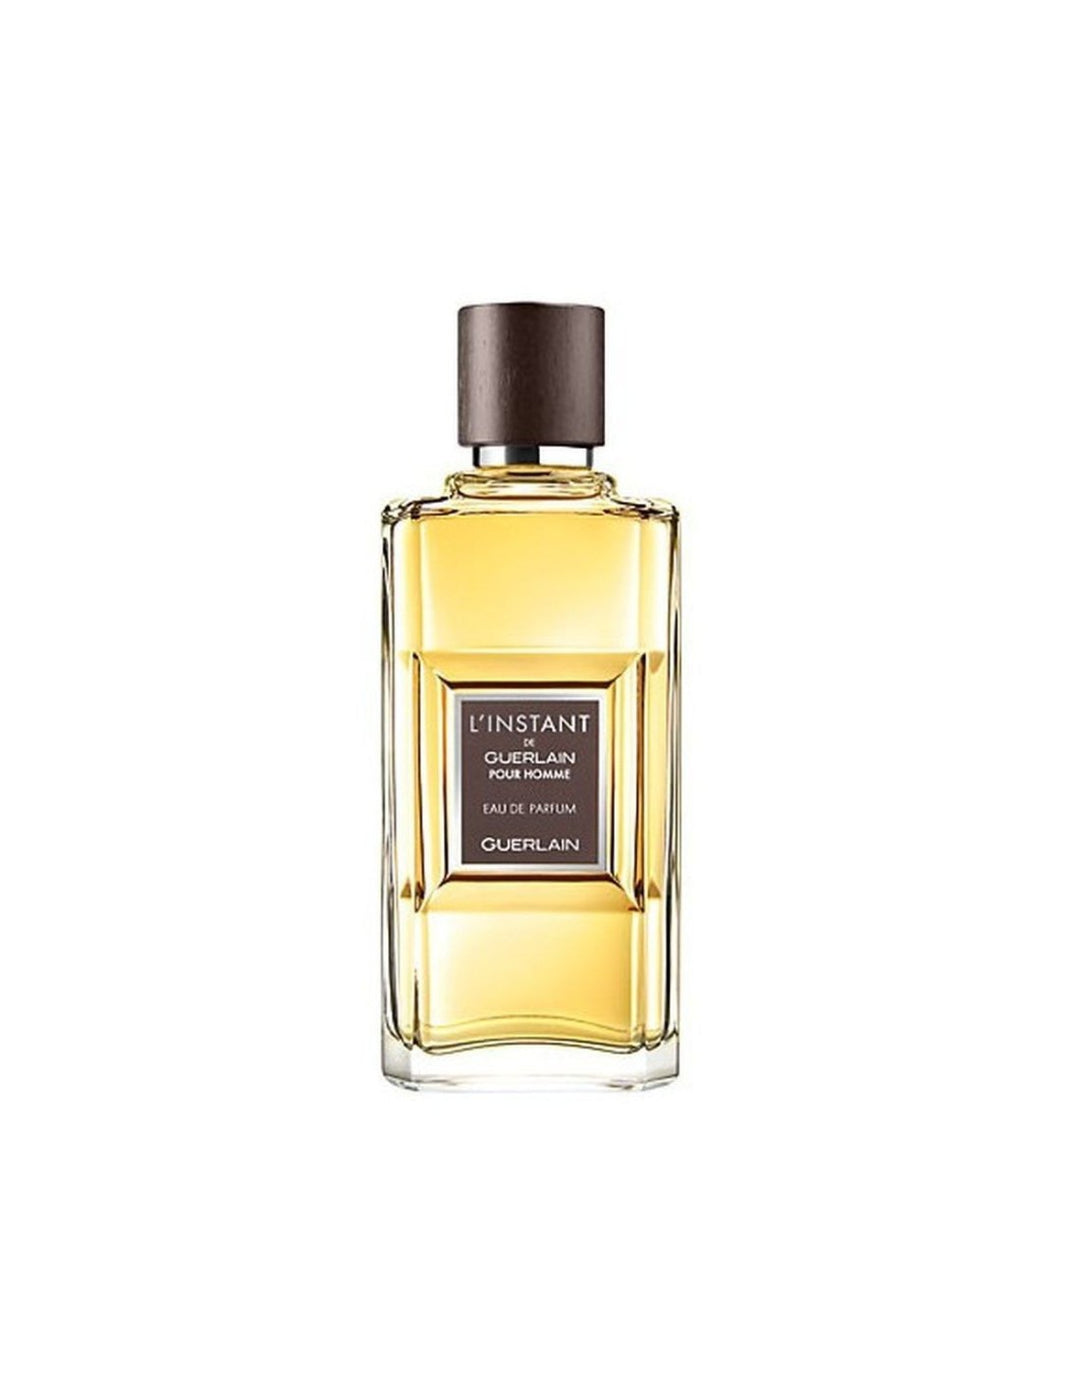 L'Instant De Guerlain Pour Homme - TESTER (no cap) Eau de Parfum Uomo 100 ml